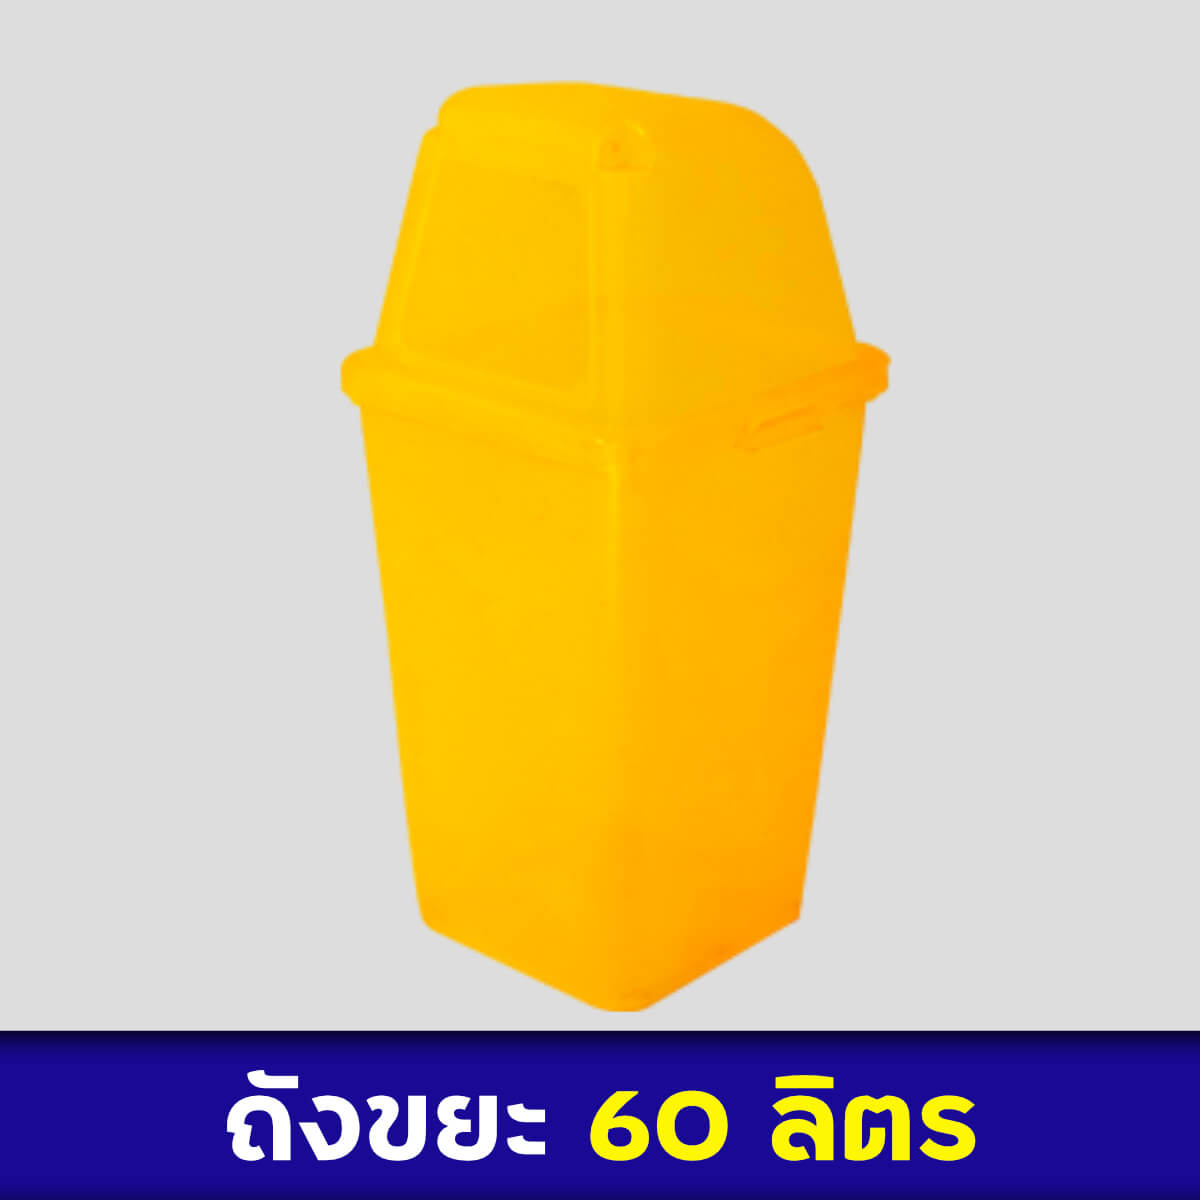 ถังขยะสีเหลือง 60ลิตร